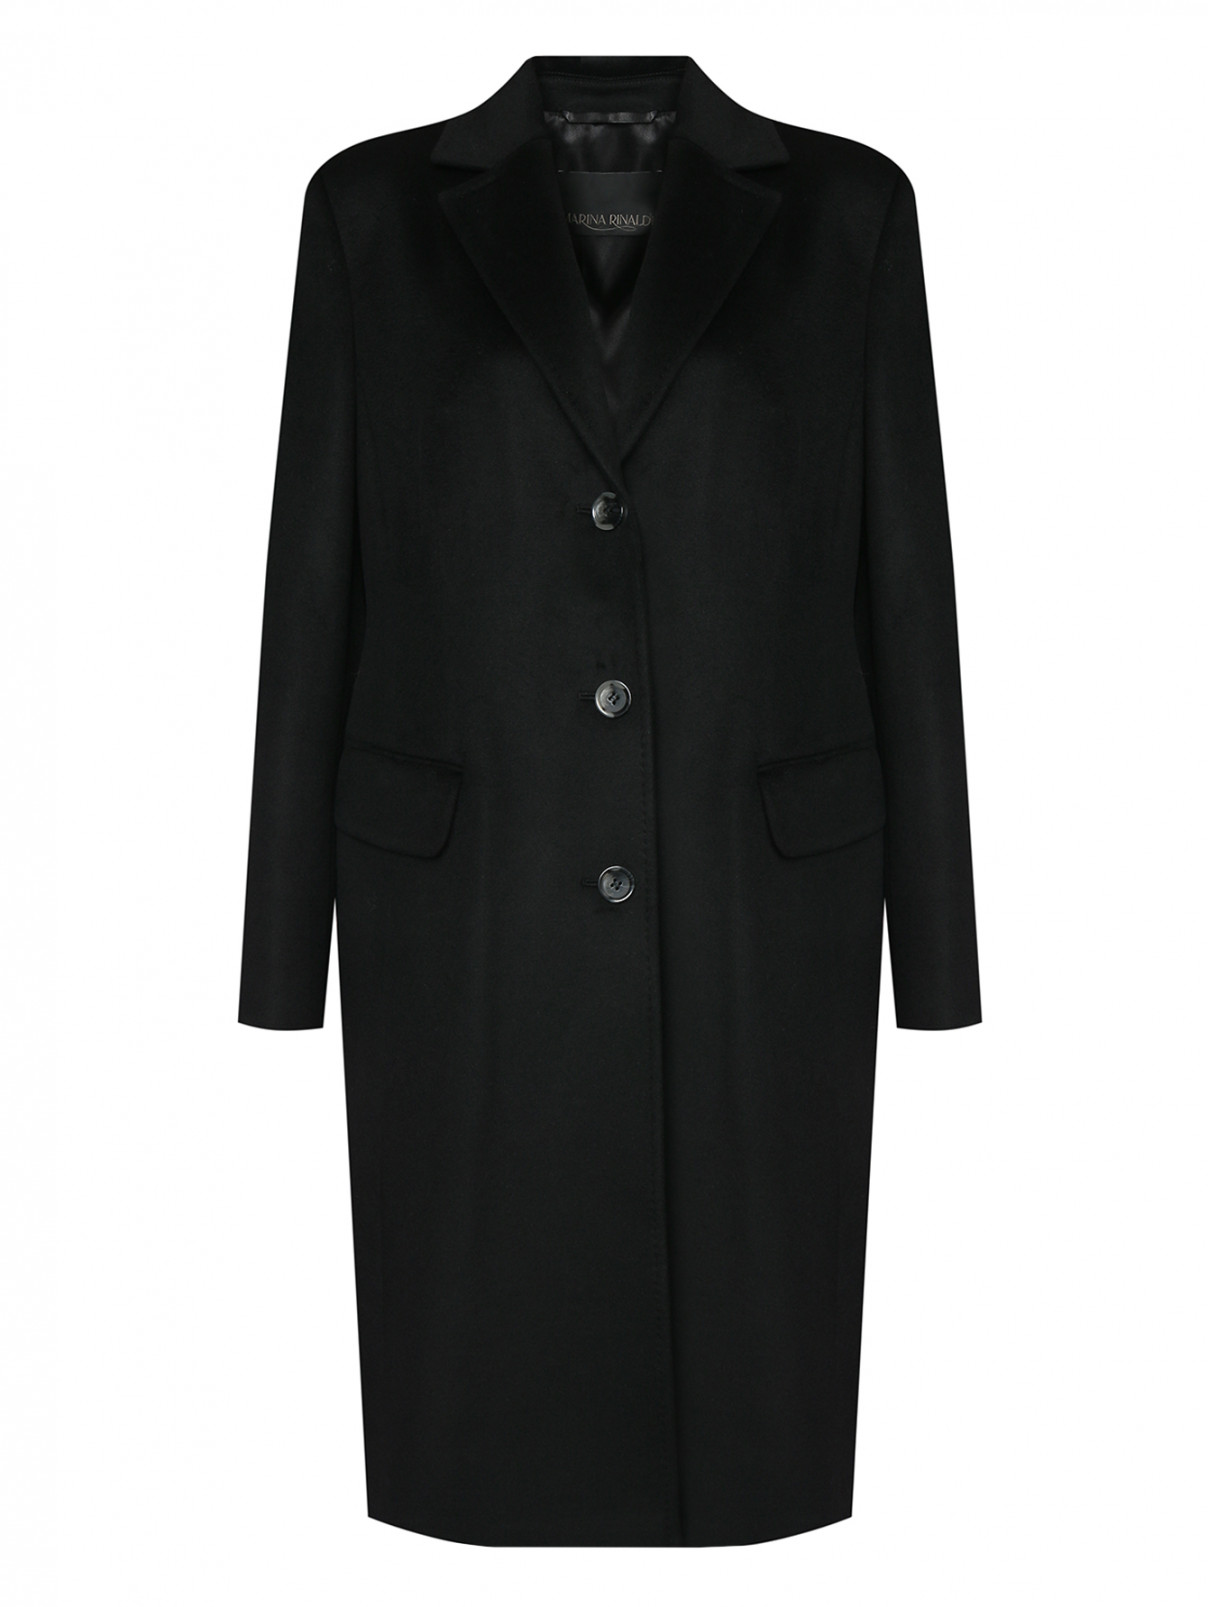 Пальто из шерсти на пуговицах с карманами Marina Rinaldi  –  Общий вид  – Цвет:  Черный